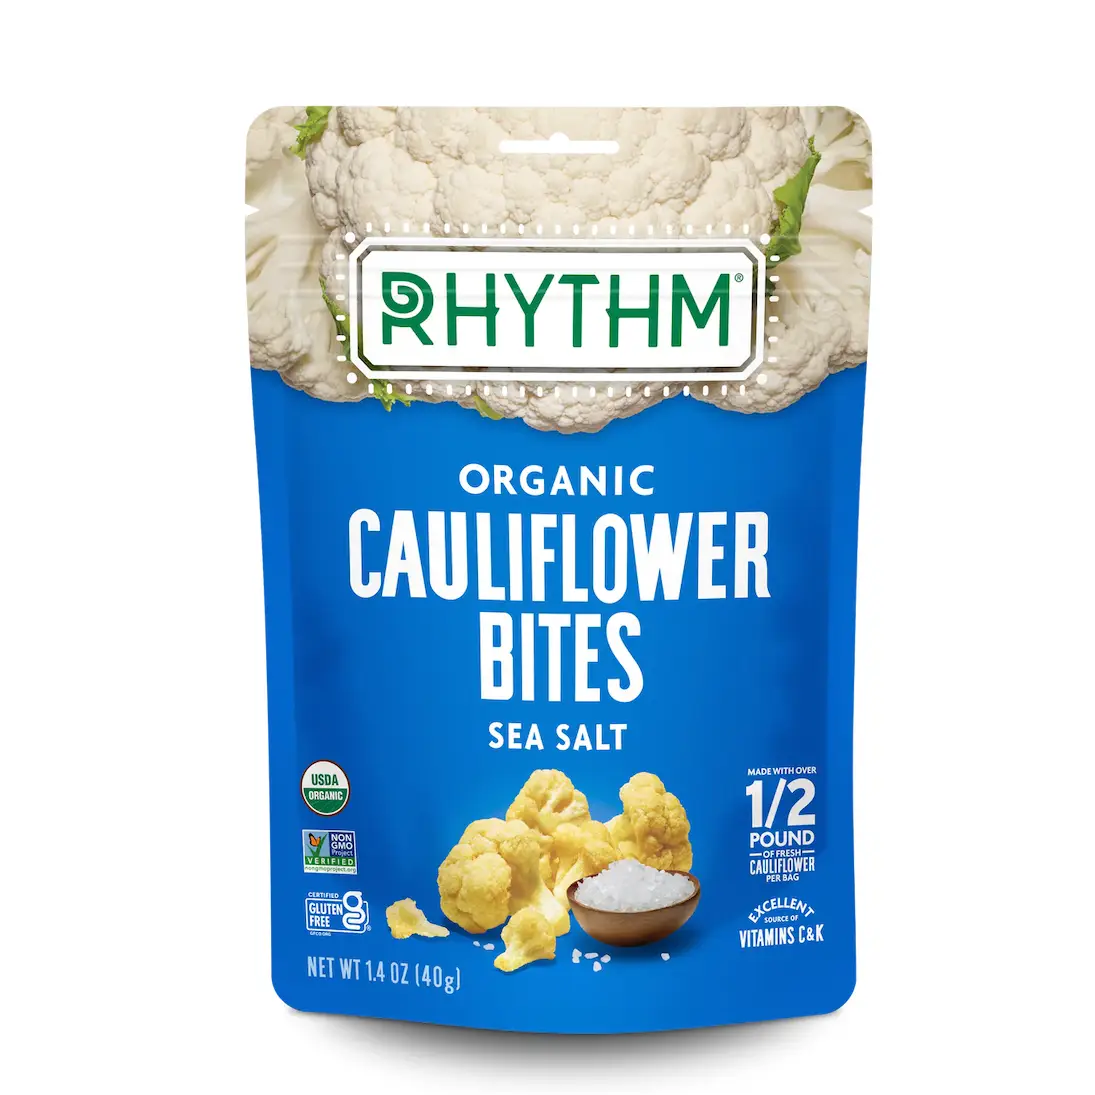 Sea Salt Cauliflower Bites